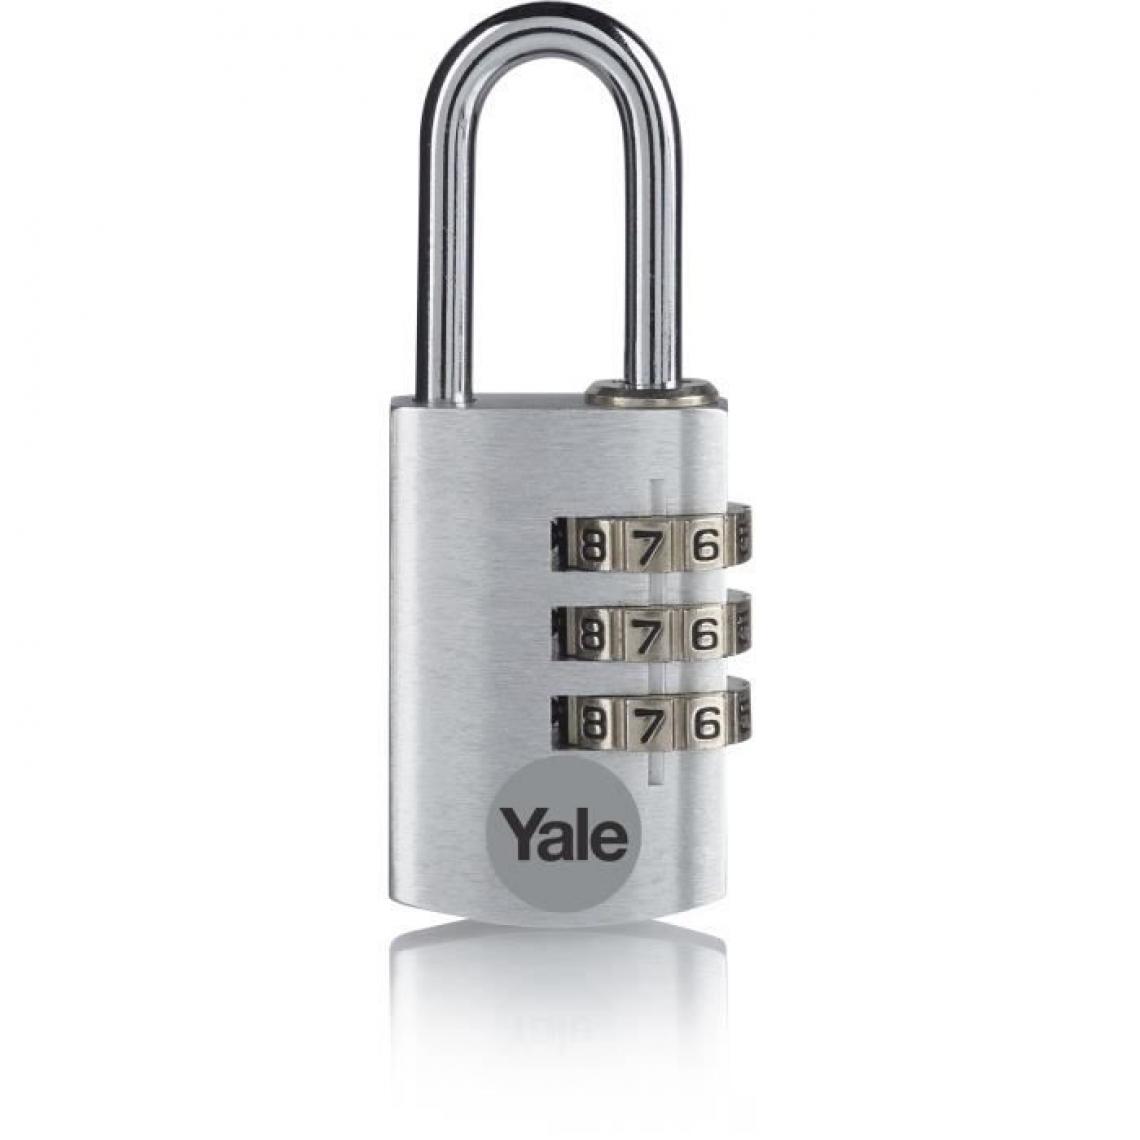 Yale - YALE Cadenas aluminium a combinaison 20 mm, anse acier, argent, 3 chiffres - Verrou, cadenas, targette